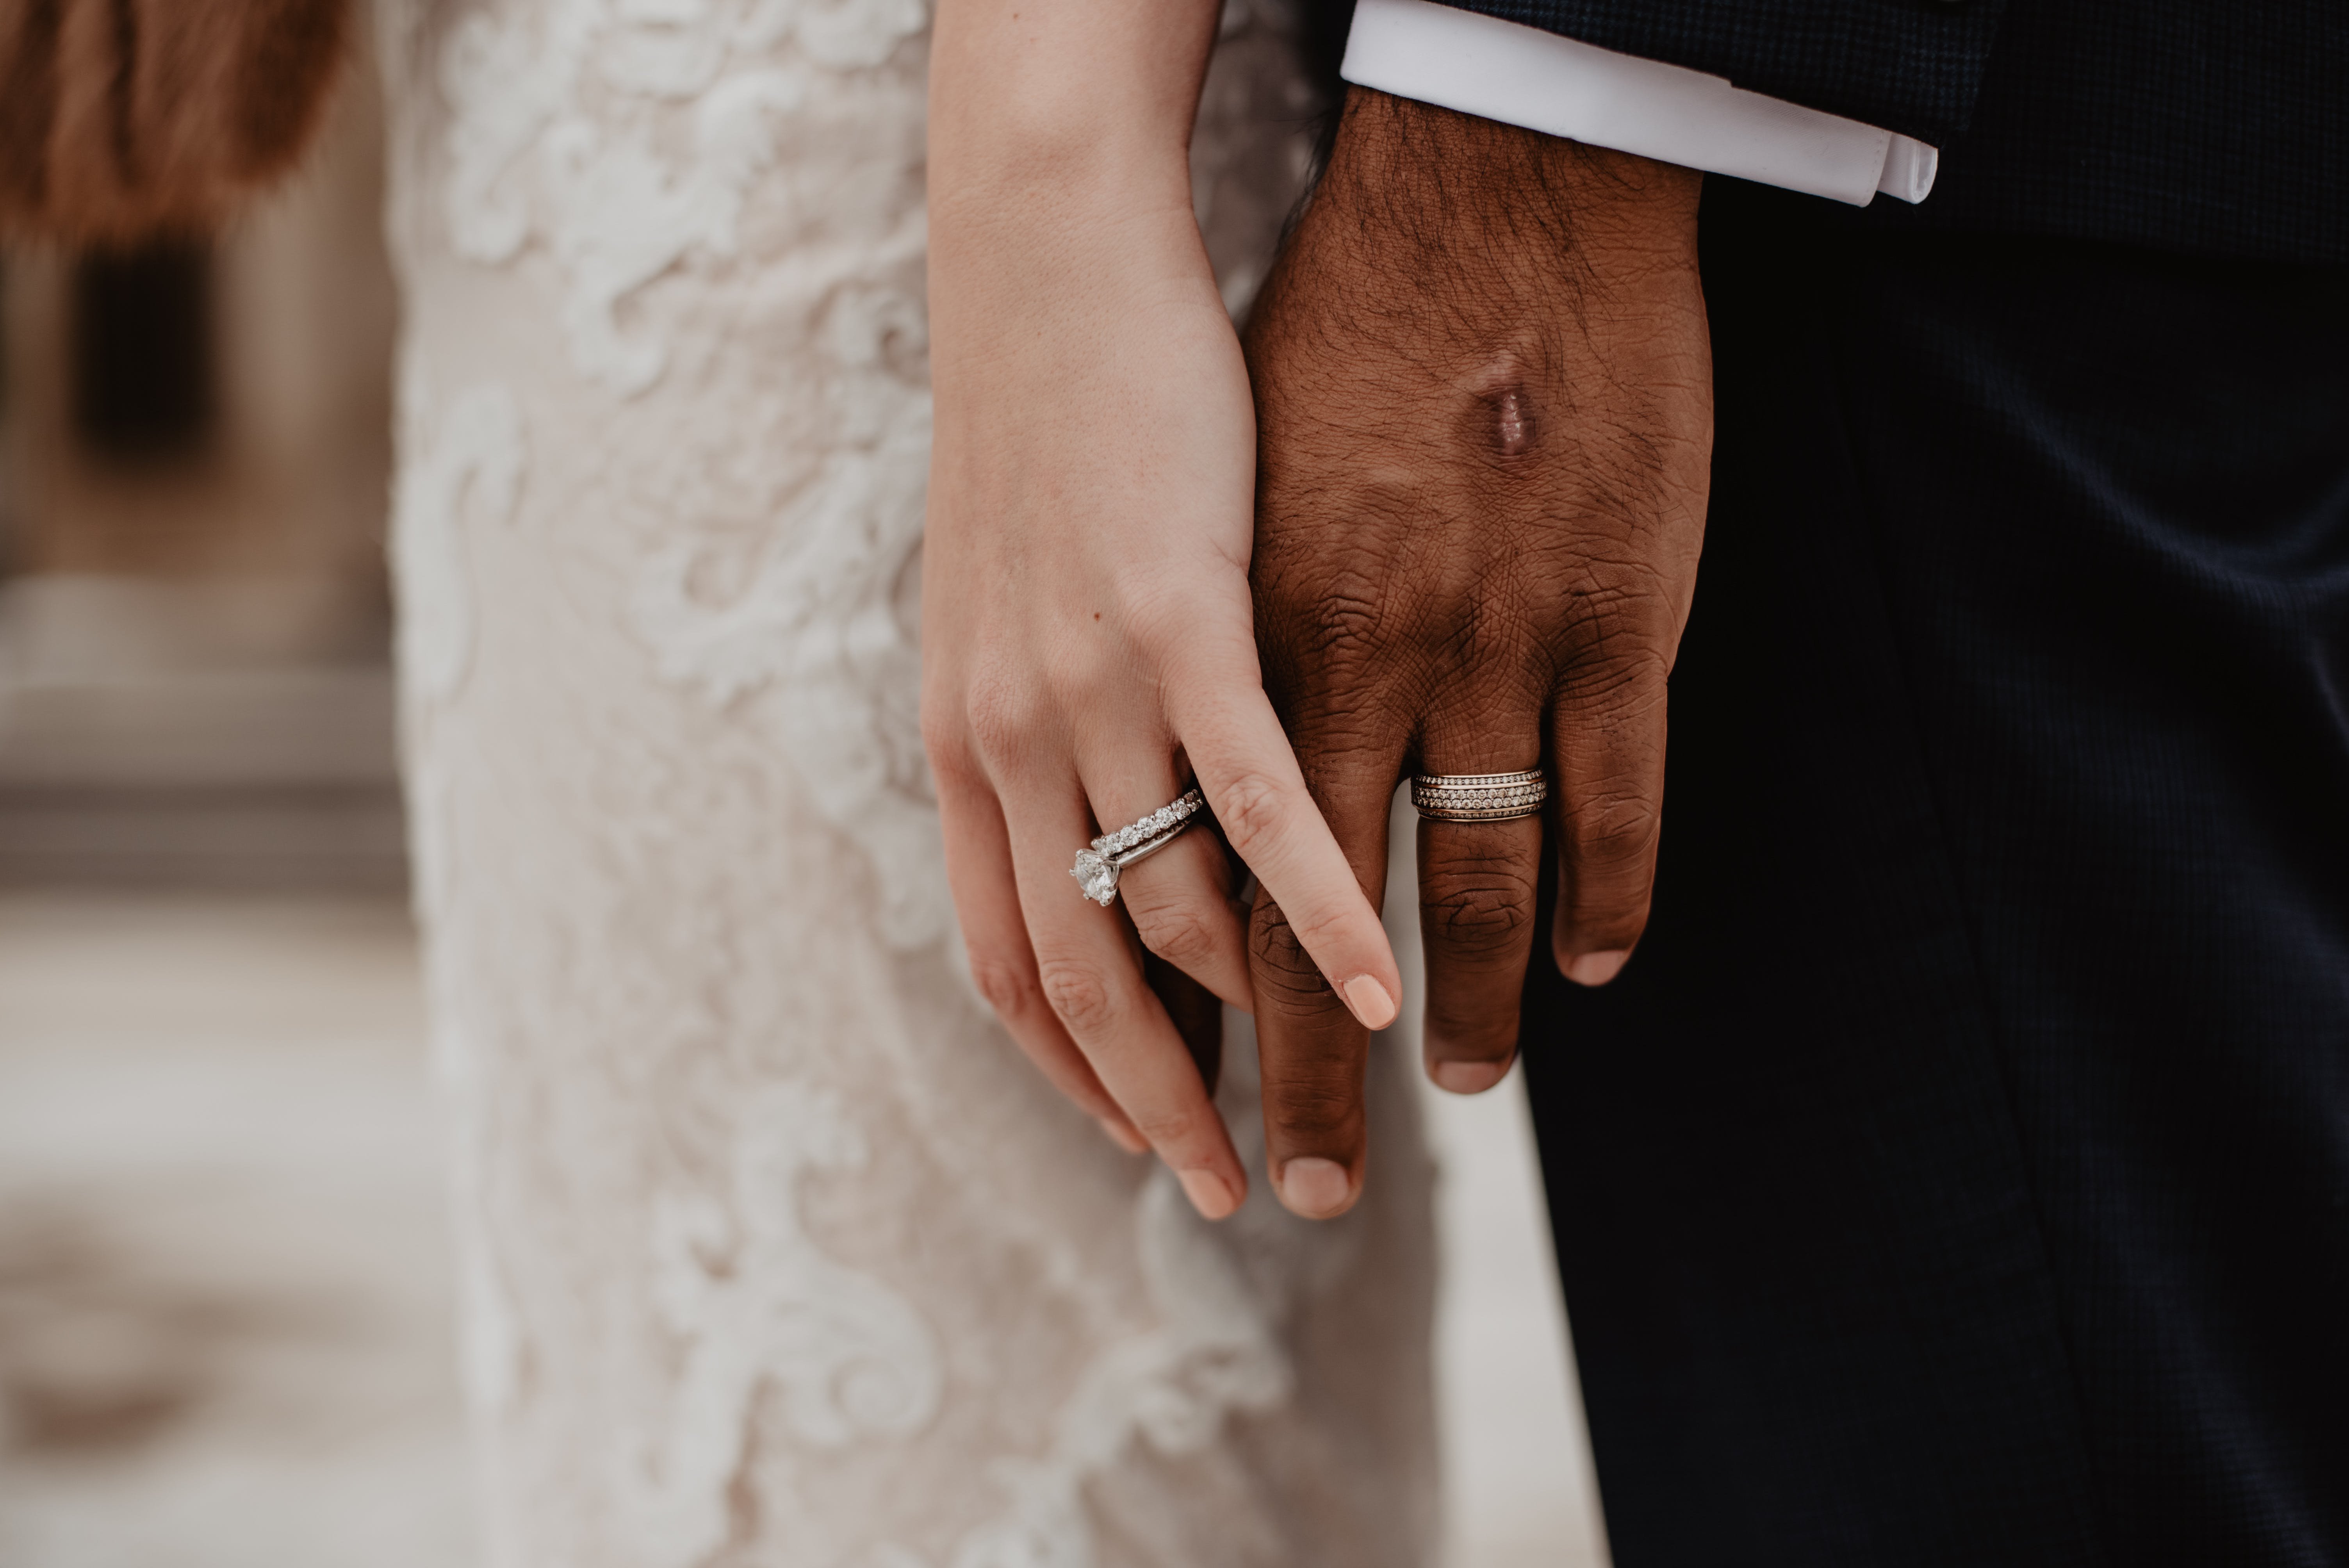 Замуж на какую руку кольцо. Обручальные кольца на руках. Свадебные кольца на руках. Свадьба руки с кольцами. Кольца жениха и невесты.